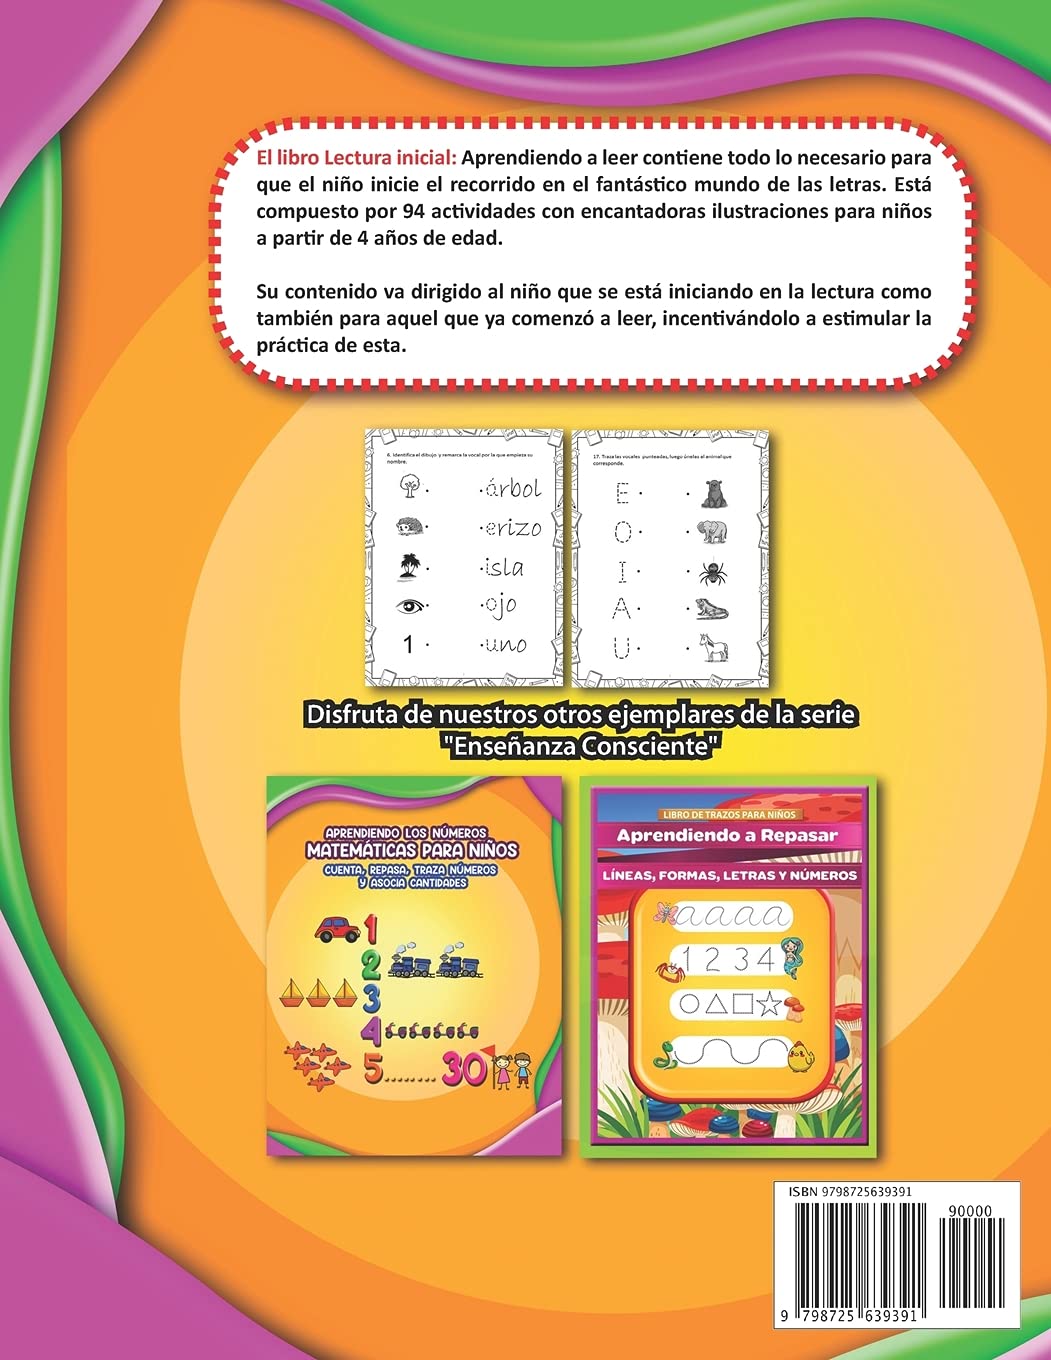 Lectura Inicial | Aprendiendo a Leer | Actividades para niños de 4 años en español (Colección Lectura Inicial | Aprendiendo a Leer) (Spanish Edition)